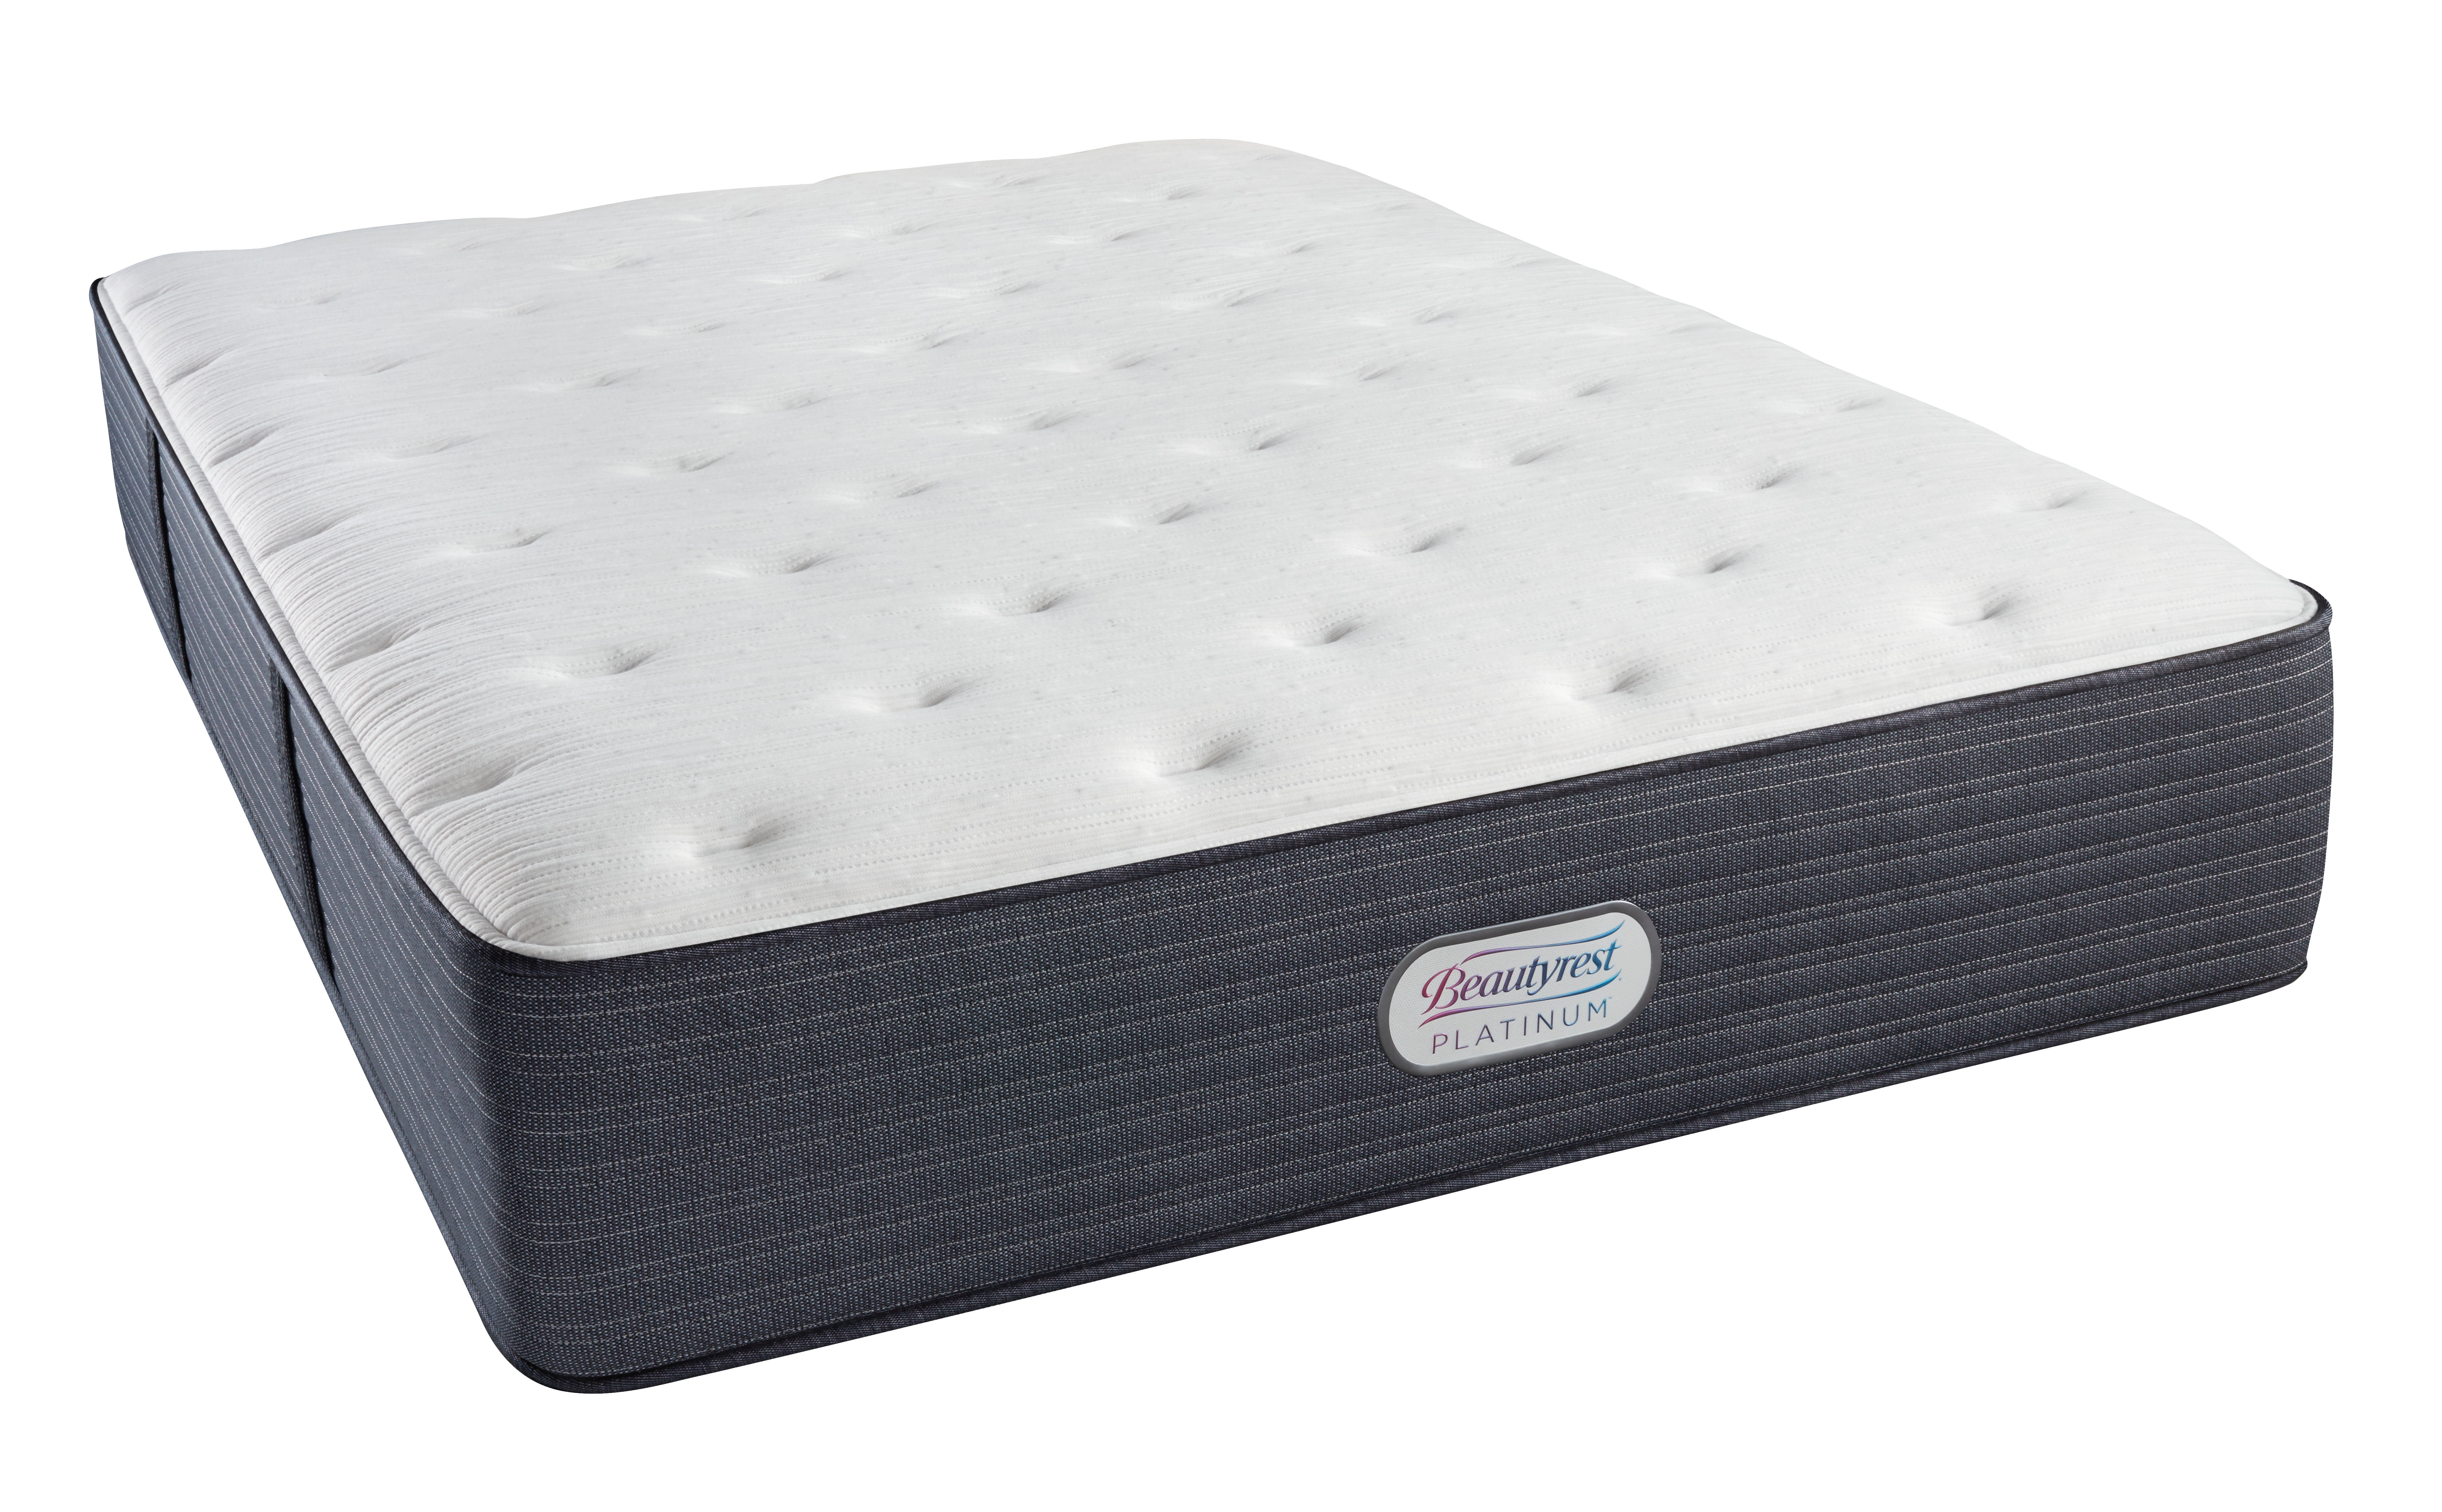 beautyrest platinum mattress for sale